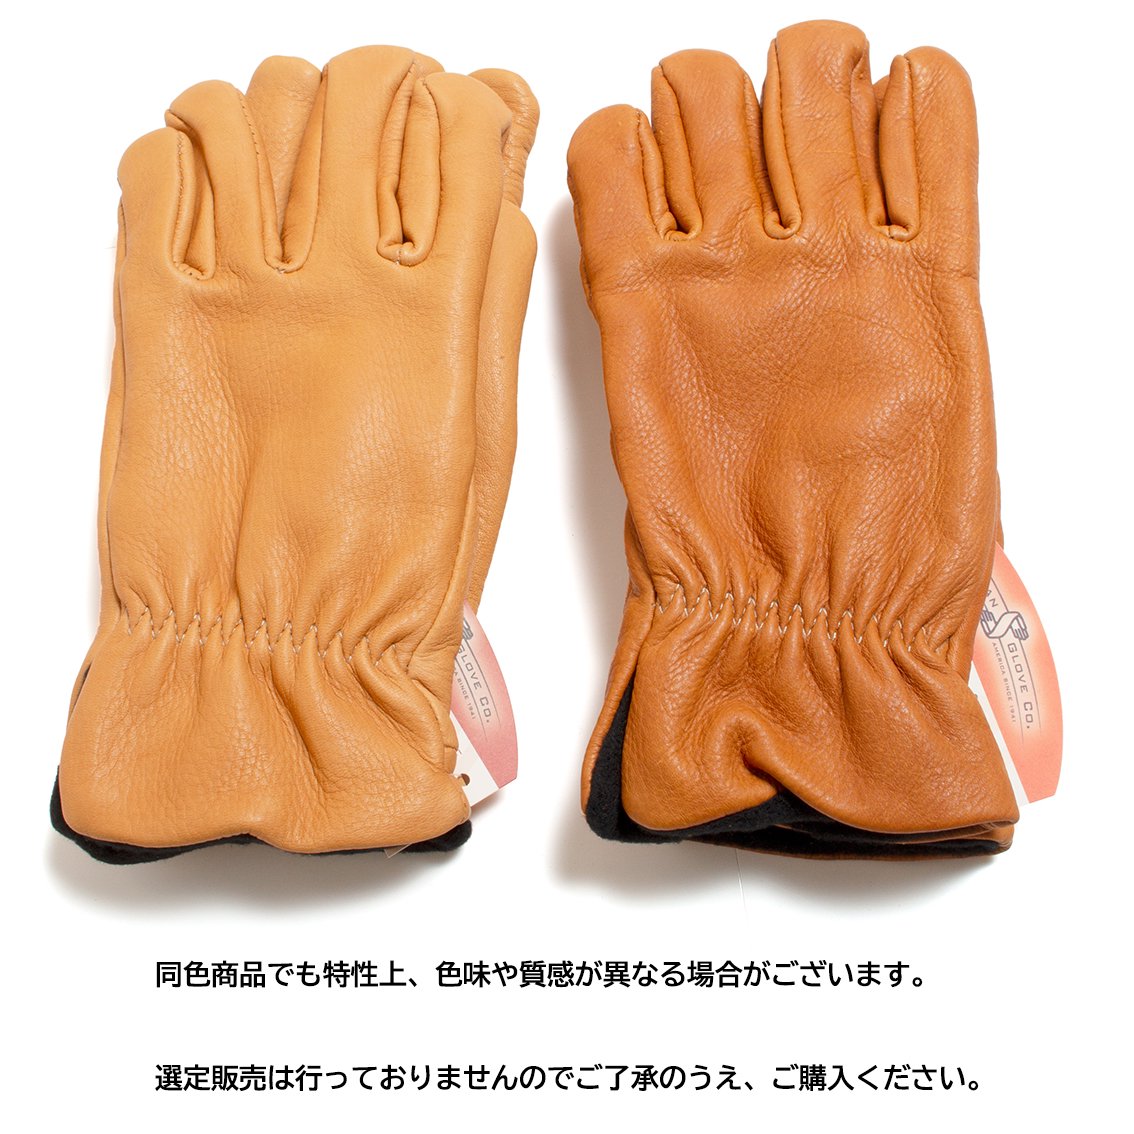 25170円 72％以上節約 n a 革の手袋の女性 本物の女性の革の手袋 シープスキンの女性用手袋 Color : A Size 6.5